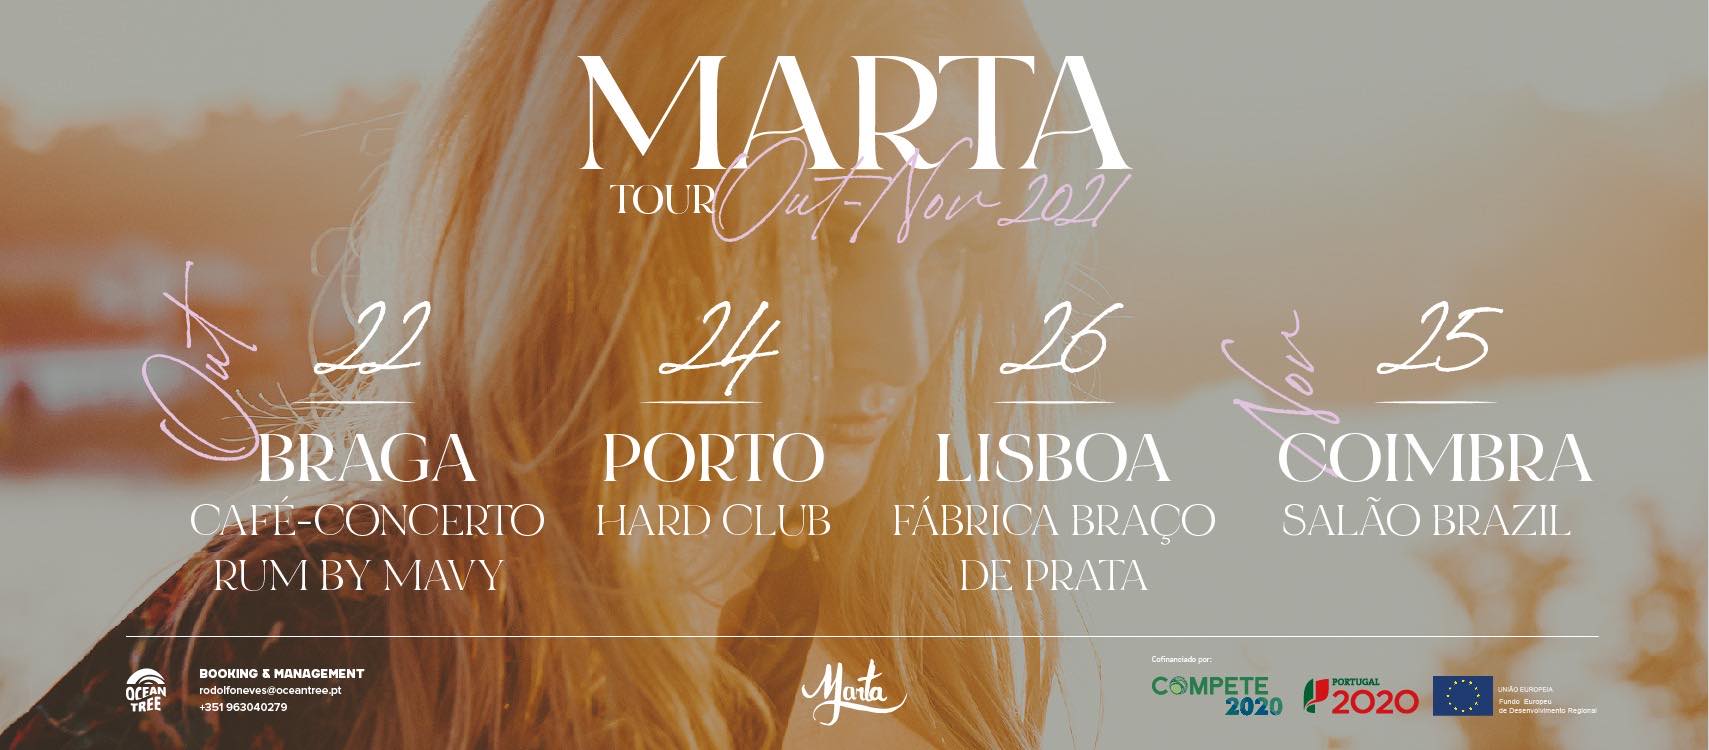 MARTA | Lisboa | Entrada gratuita